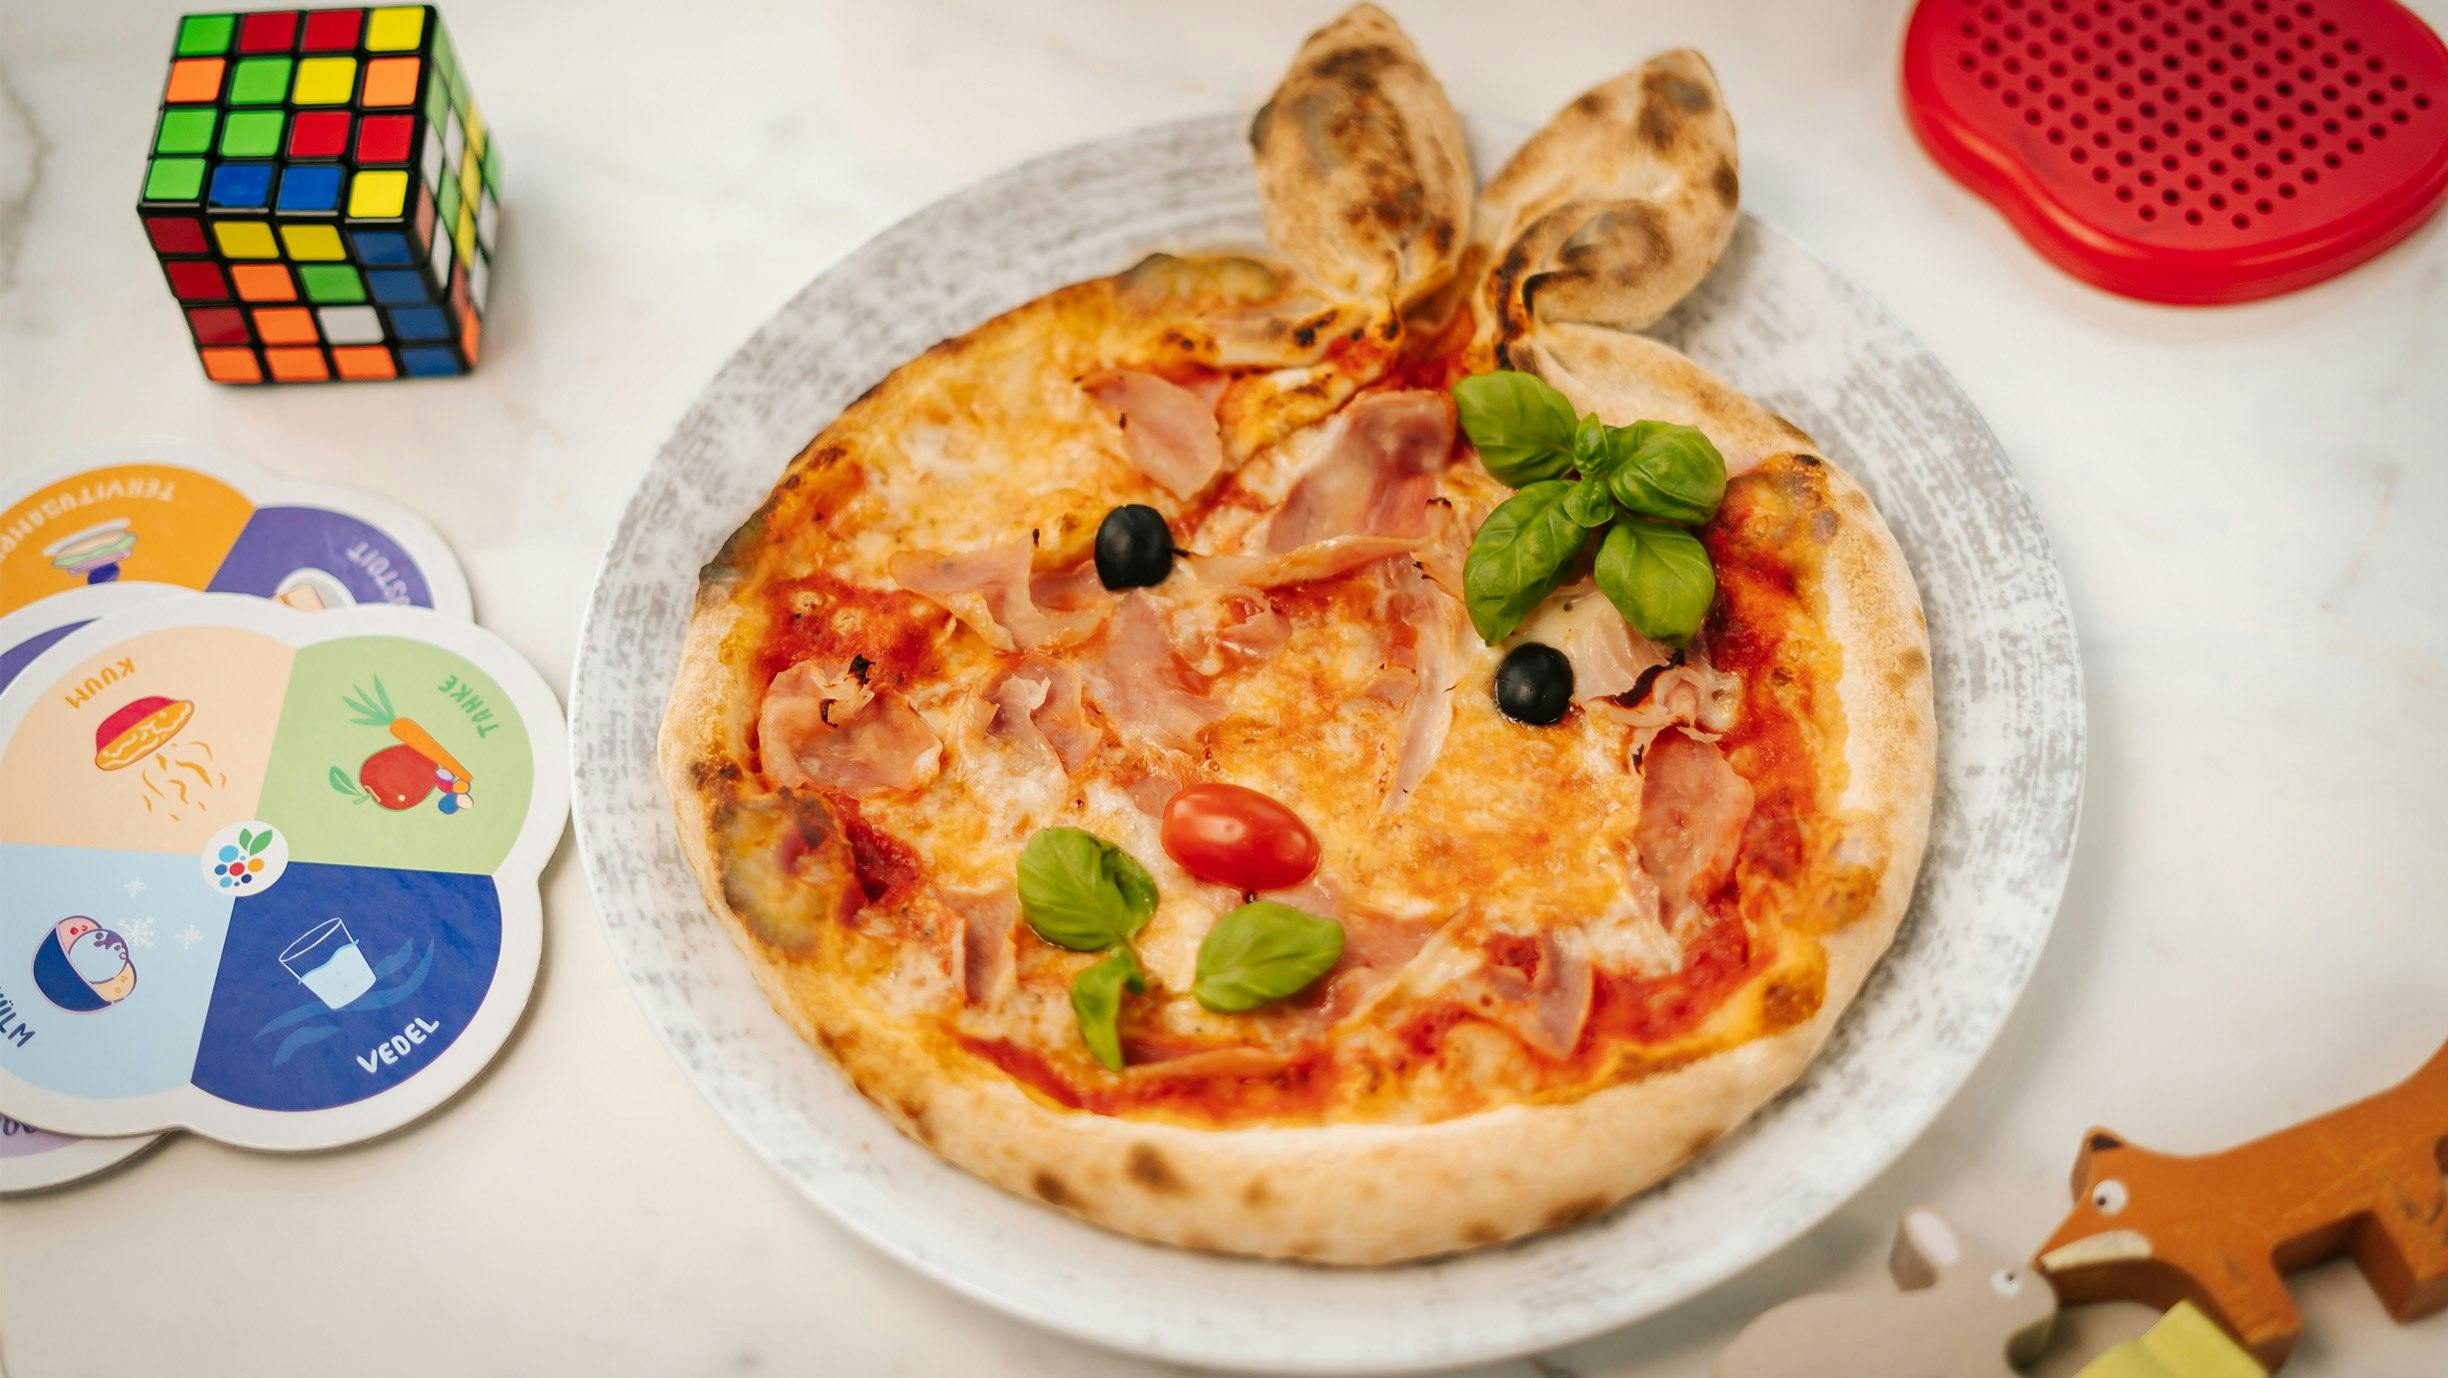 Ristorante Flavore bunny-shaped pizza